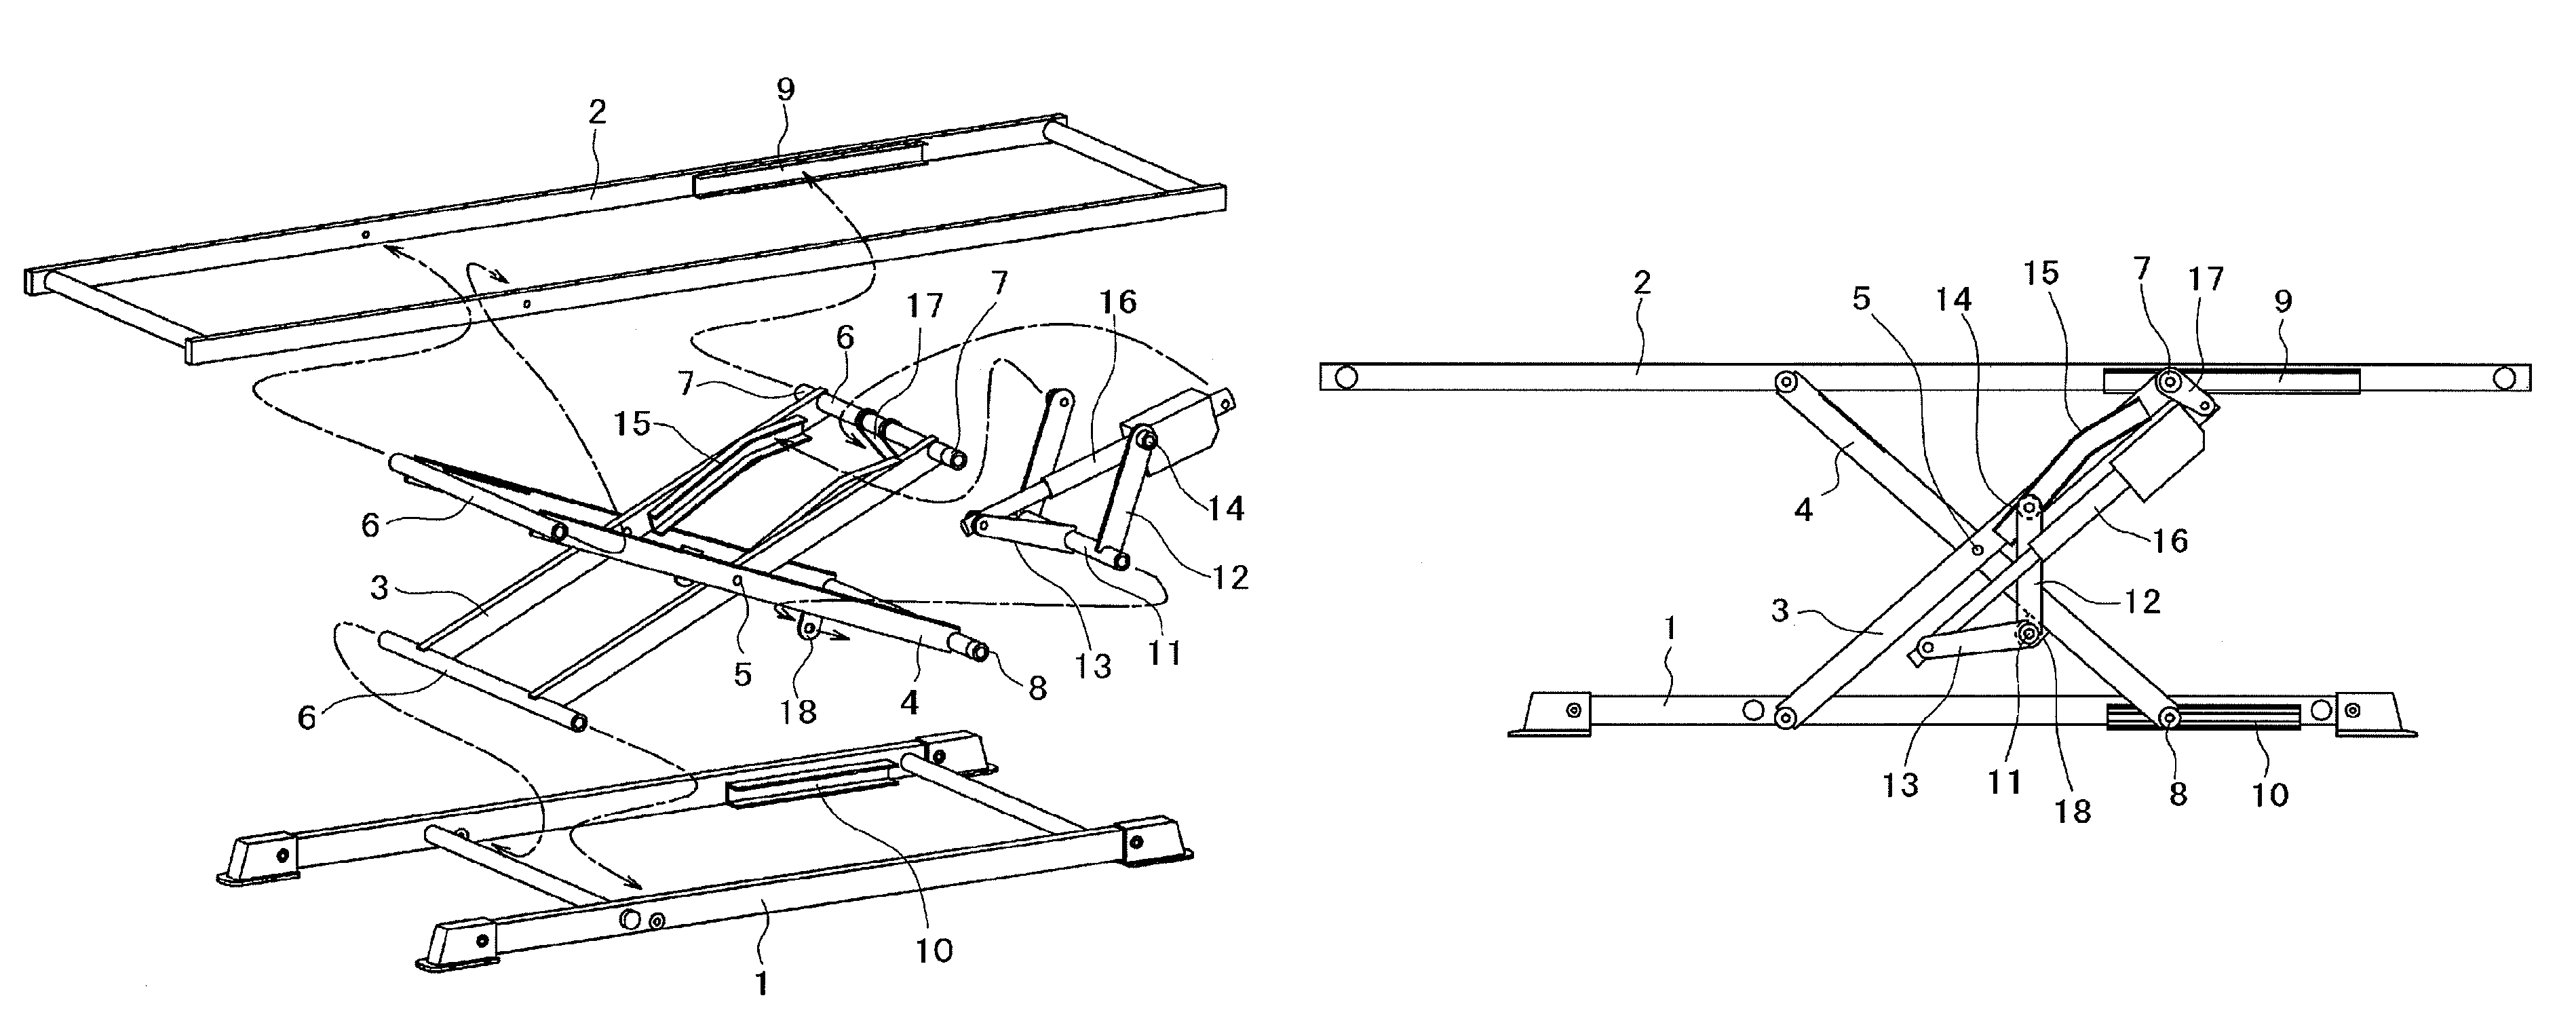 X-linked lift mechanism